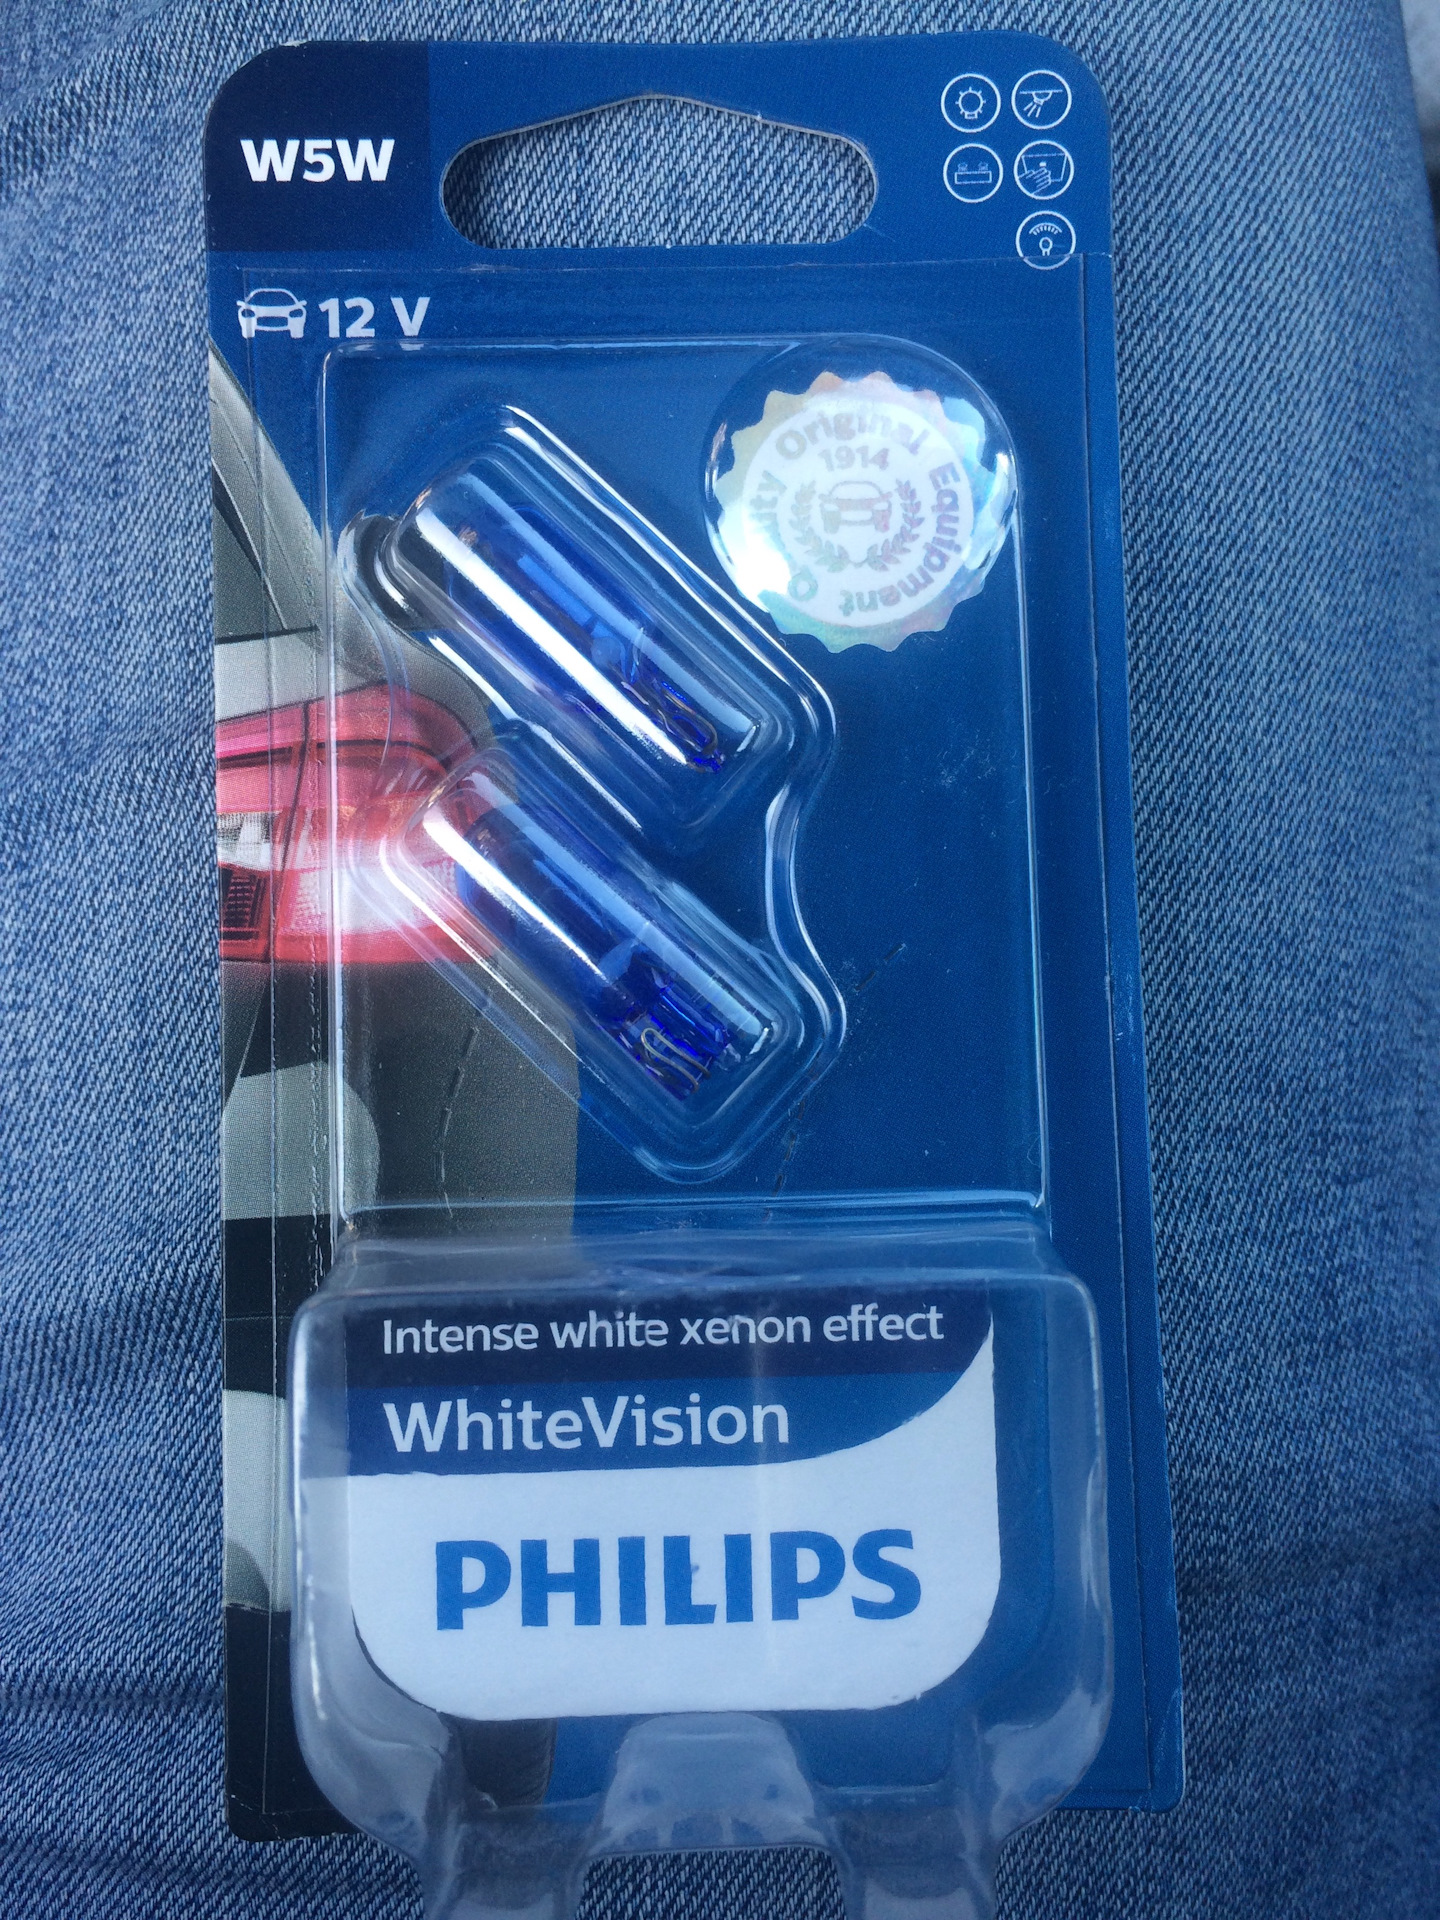 Филипс w5w. Philips White Vision w5w. Philips w5w синие. Philips w5w White Vision Xenon Effect. Лампа Филипс w5w.